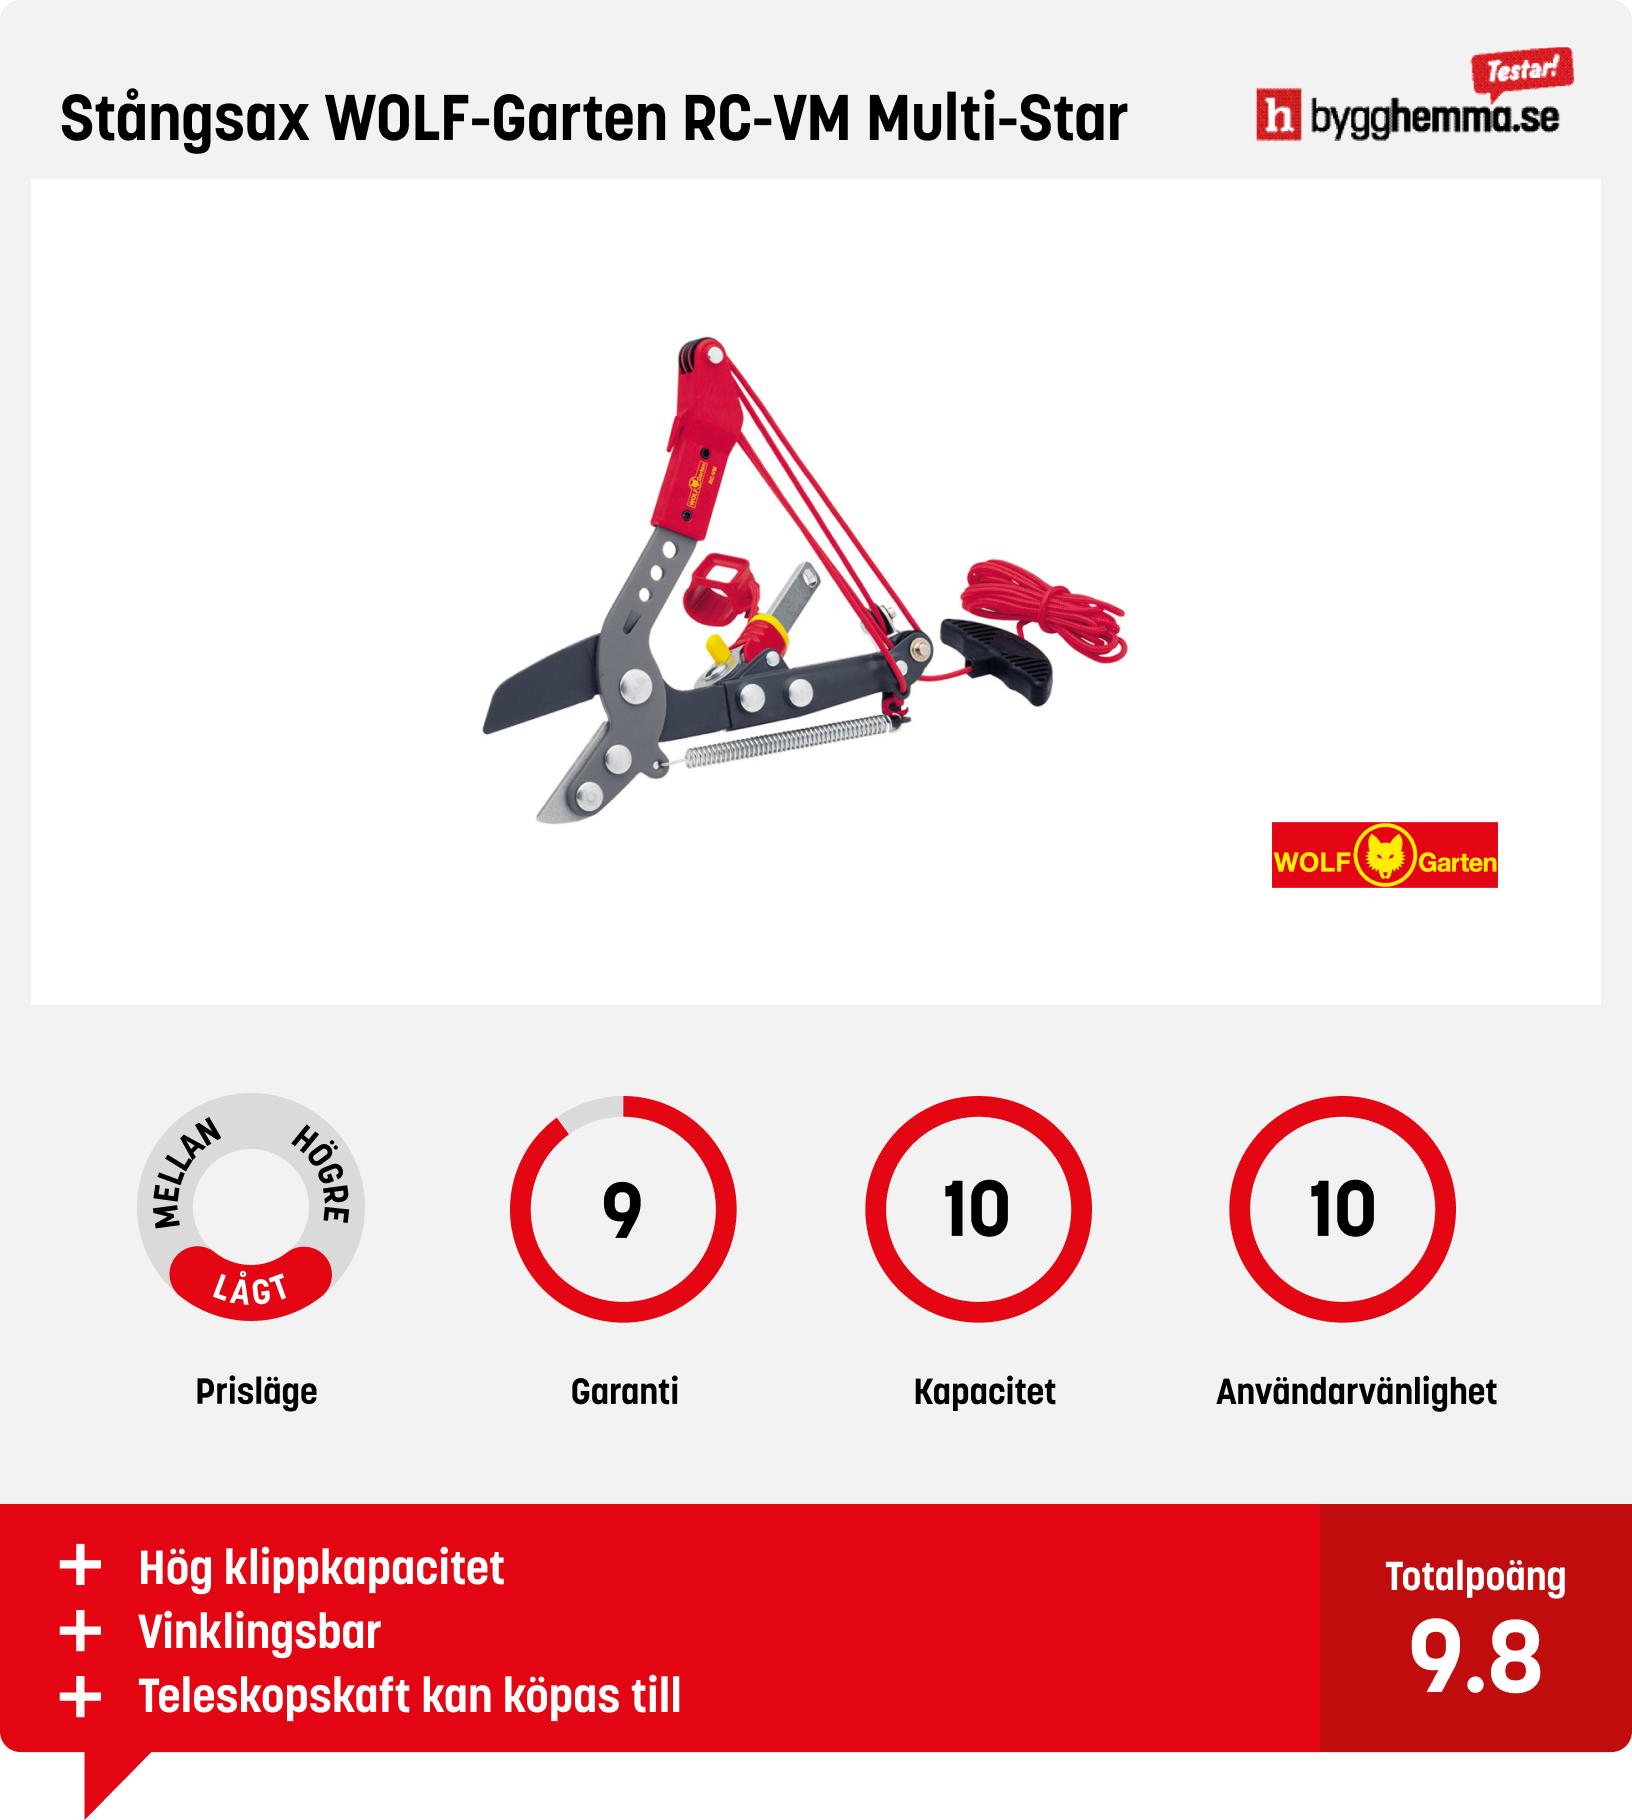 Stångsax test - Stångsax WOLF-Garten RC-VM Multi-Star